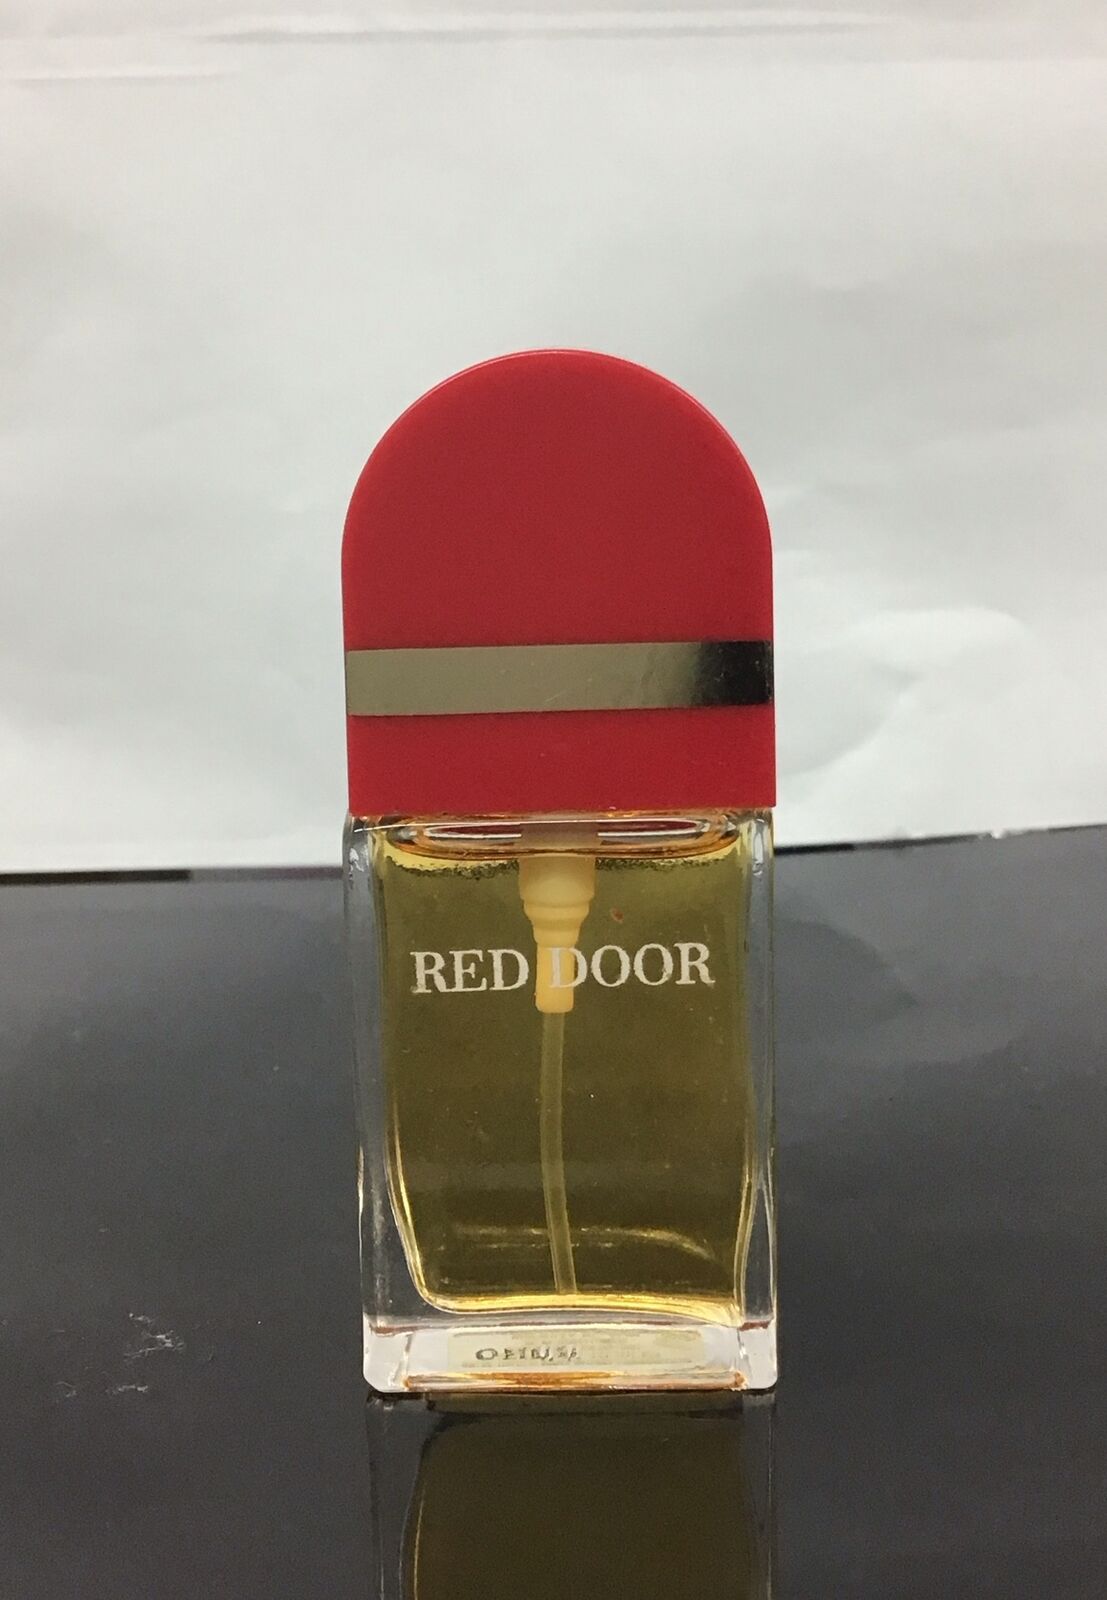 Elizabeth Arden Red Door Eau De Toilette Spray 0.33 Oz, As Pictured, No Box.